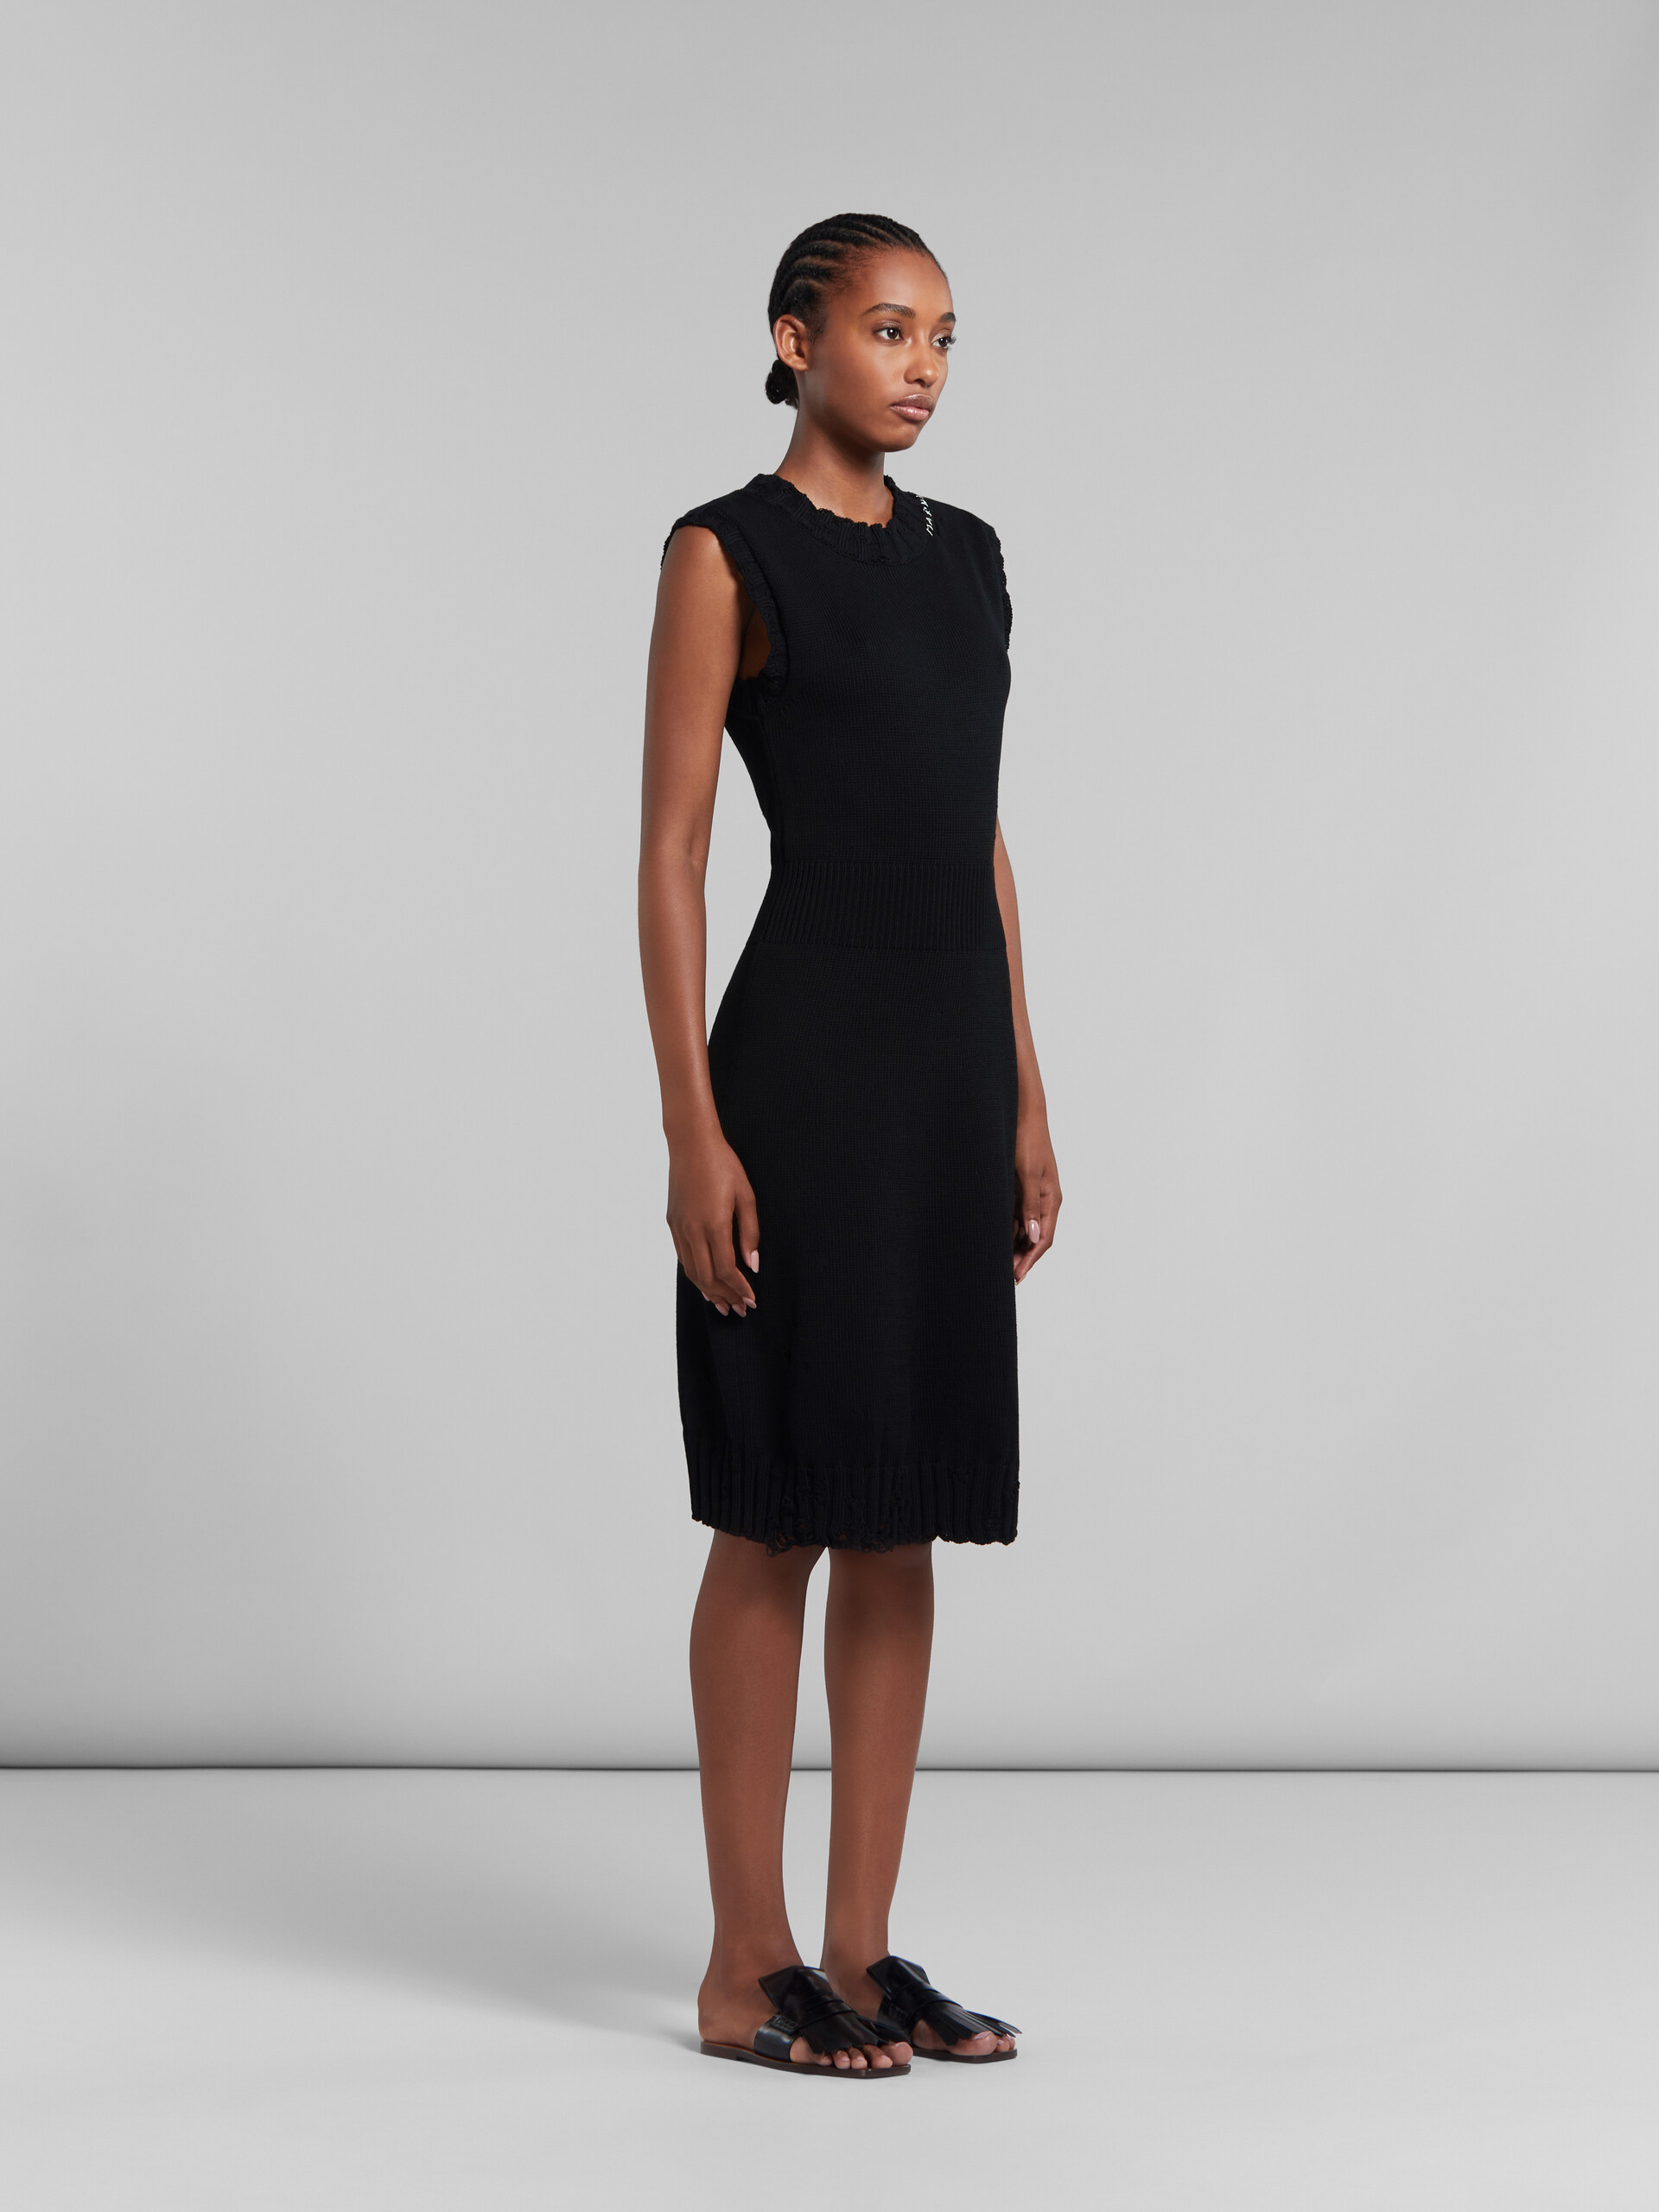 Vestido negro de punto de algodón efecto ajado - Vestidos - Image 6